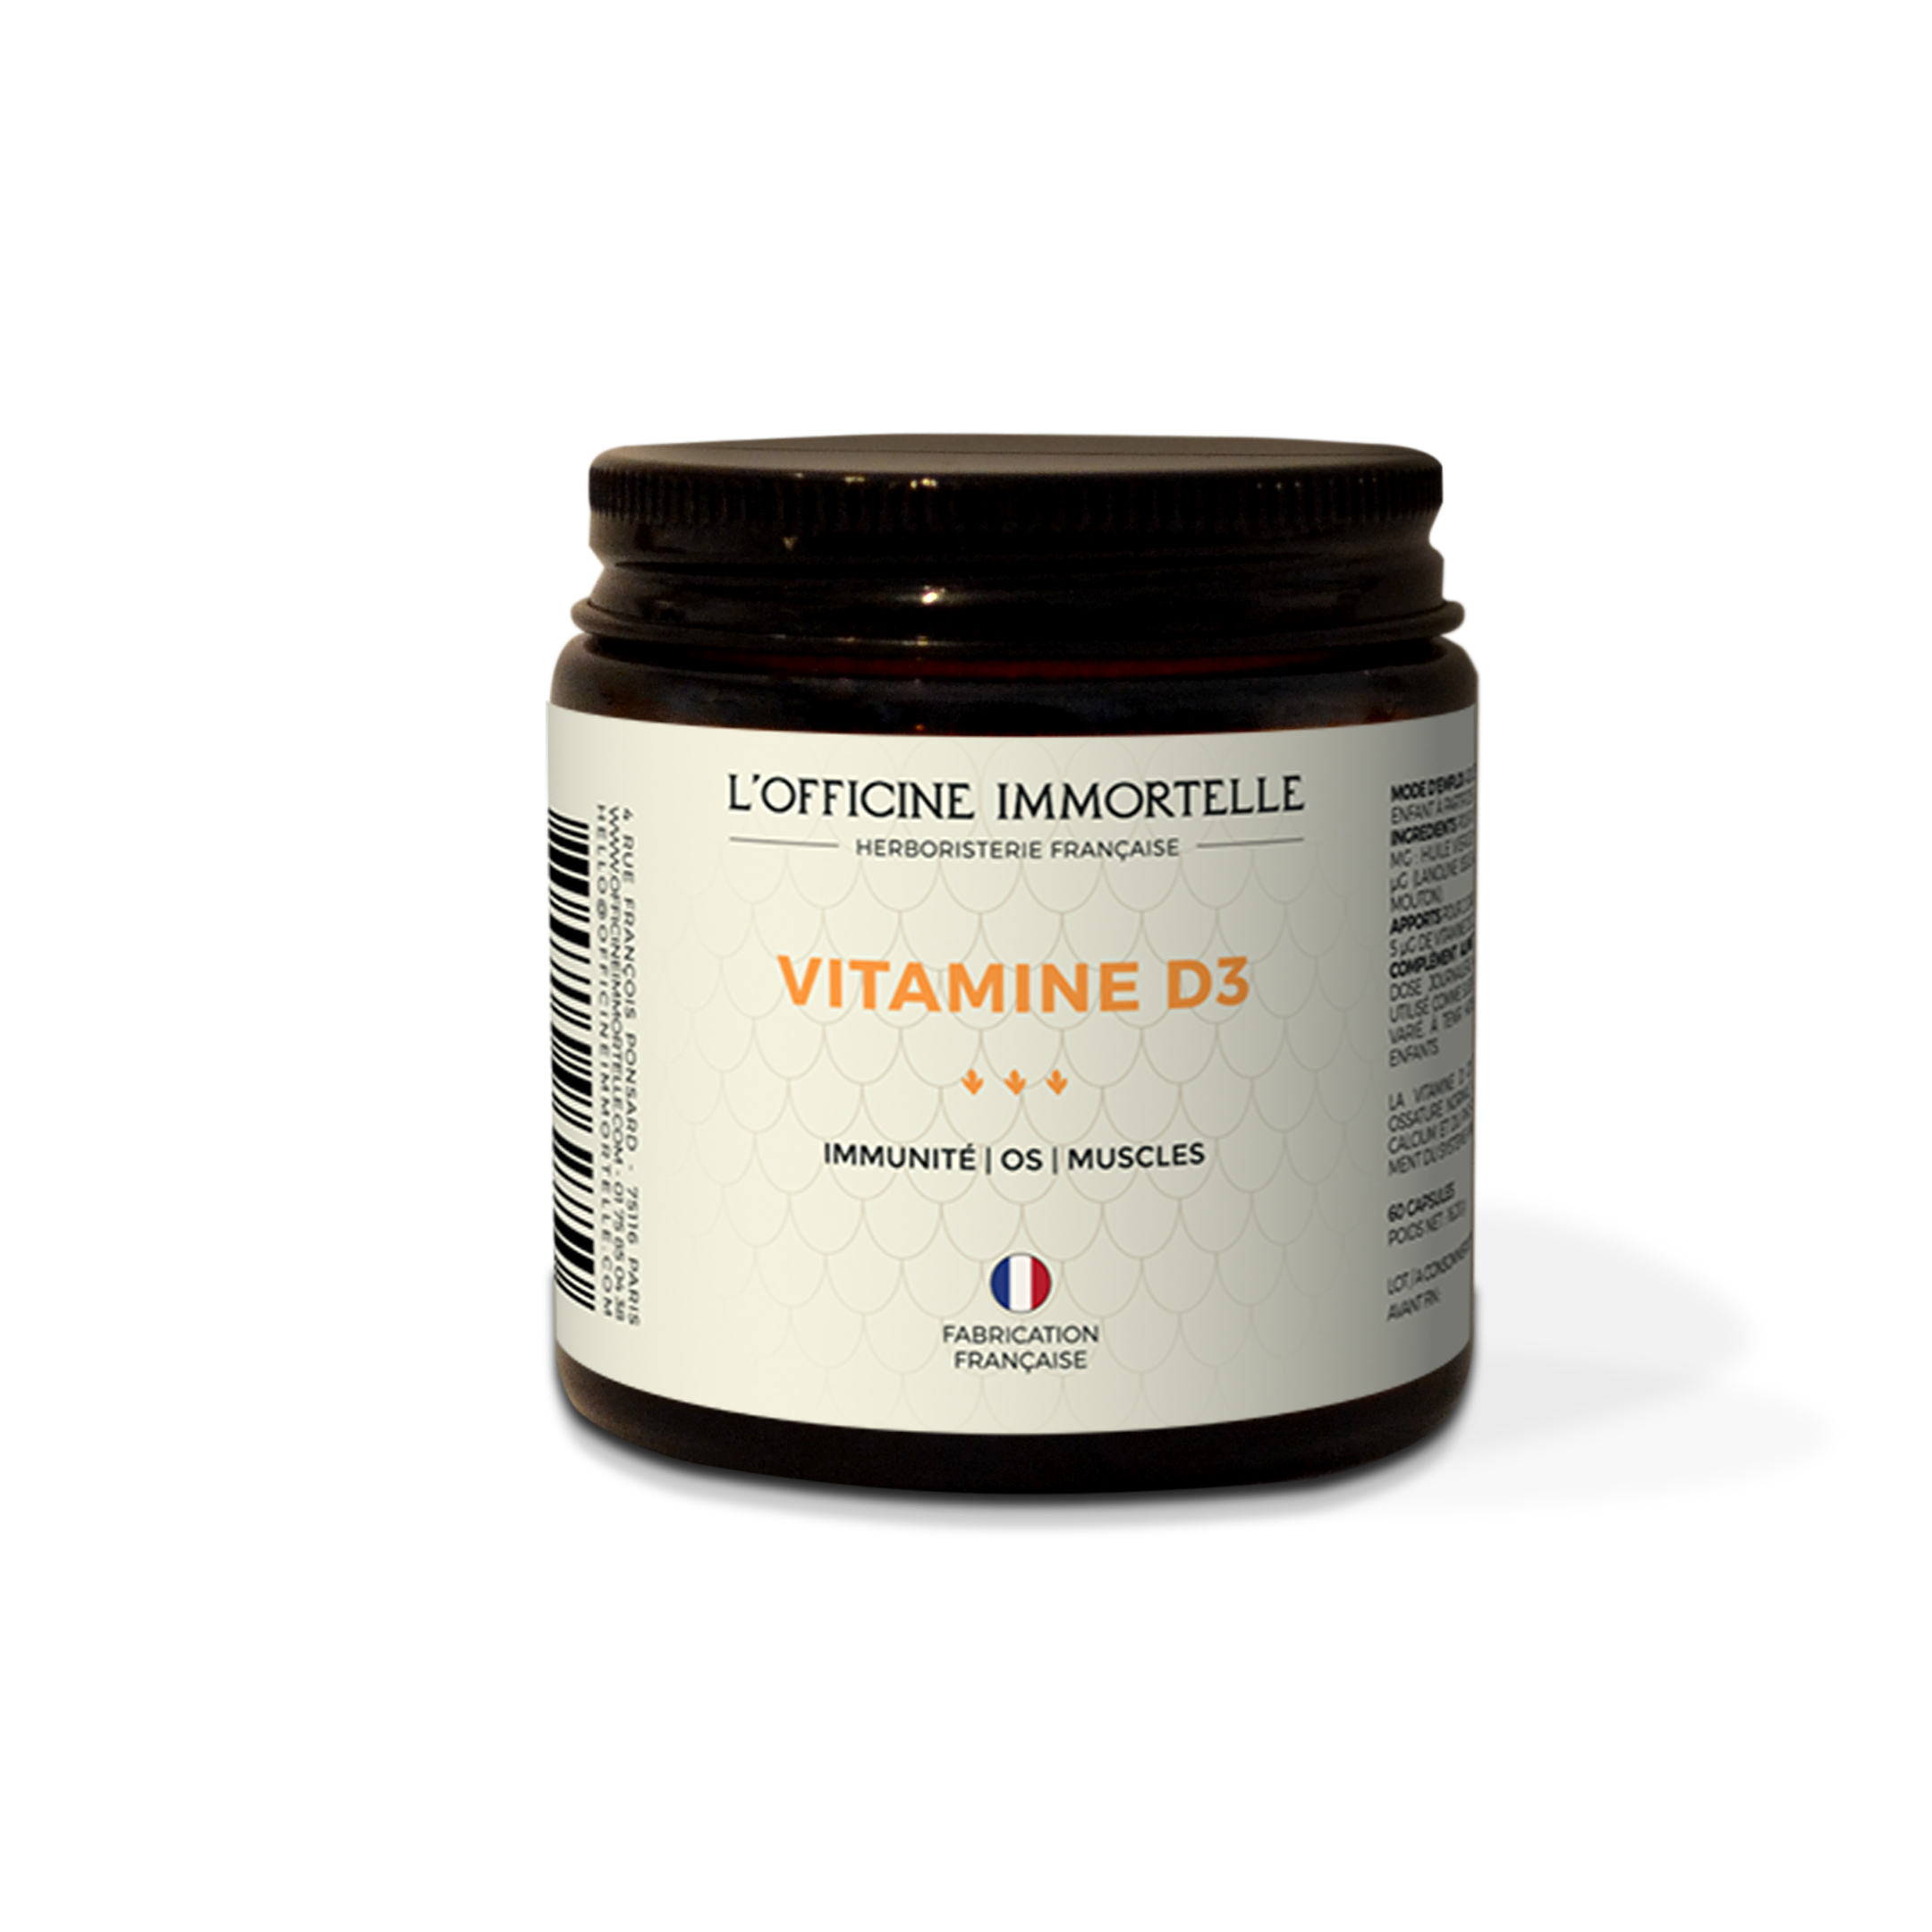 Vitamins D3